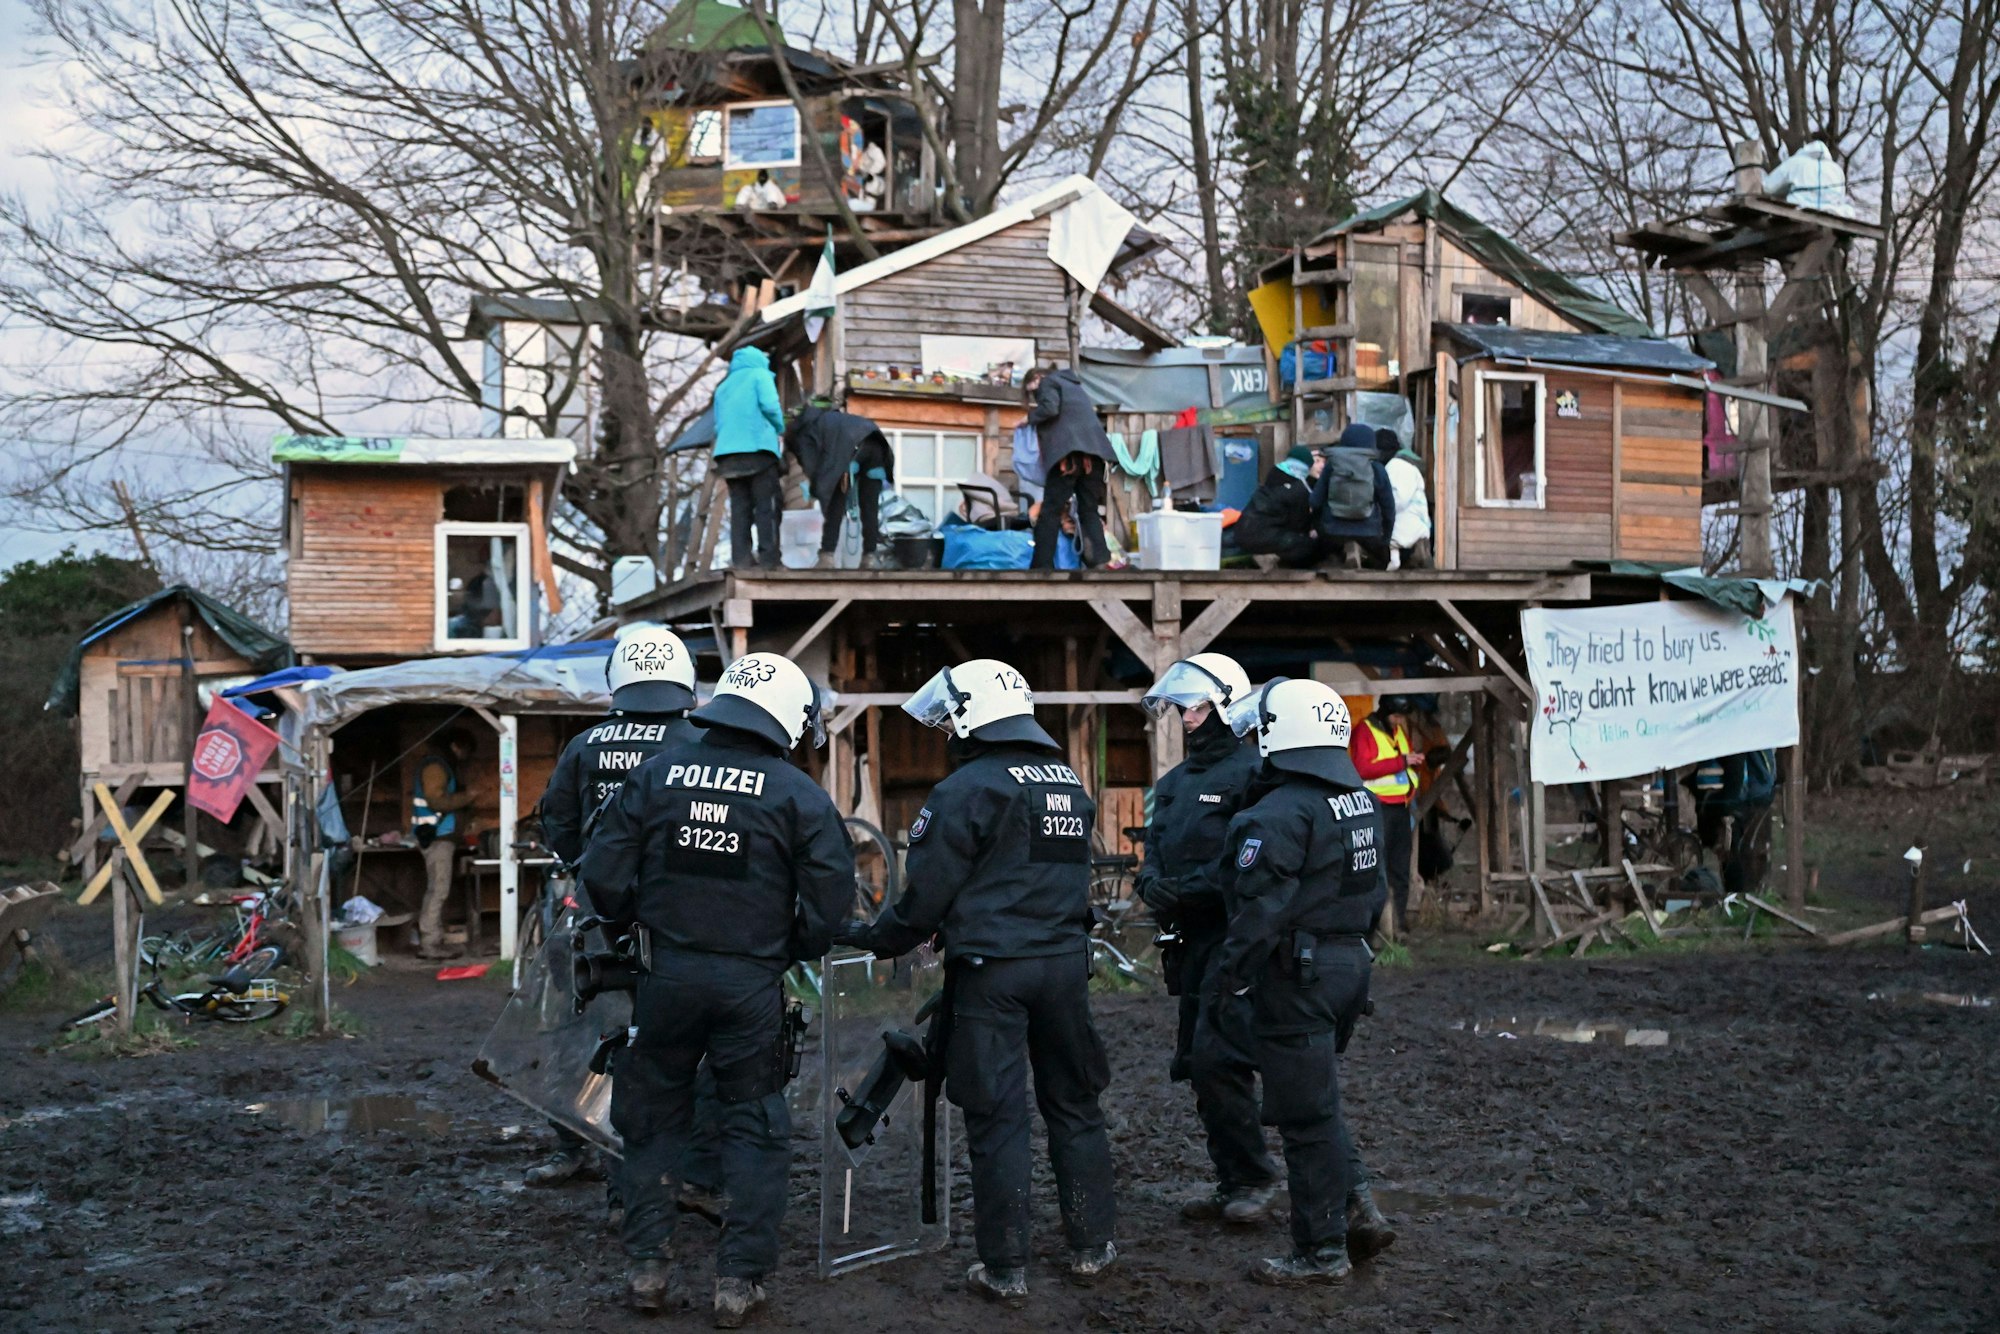 Polizisten mit Ausrüstung und Helmen stehen in einer Gruppe vor Bretterhütten, die Aktivisten aufgebaut haben. Auf einem Podest an den Hütten befinden sich mehrere Aktivisten.